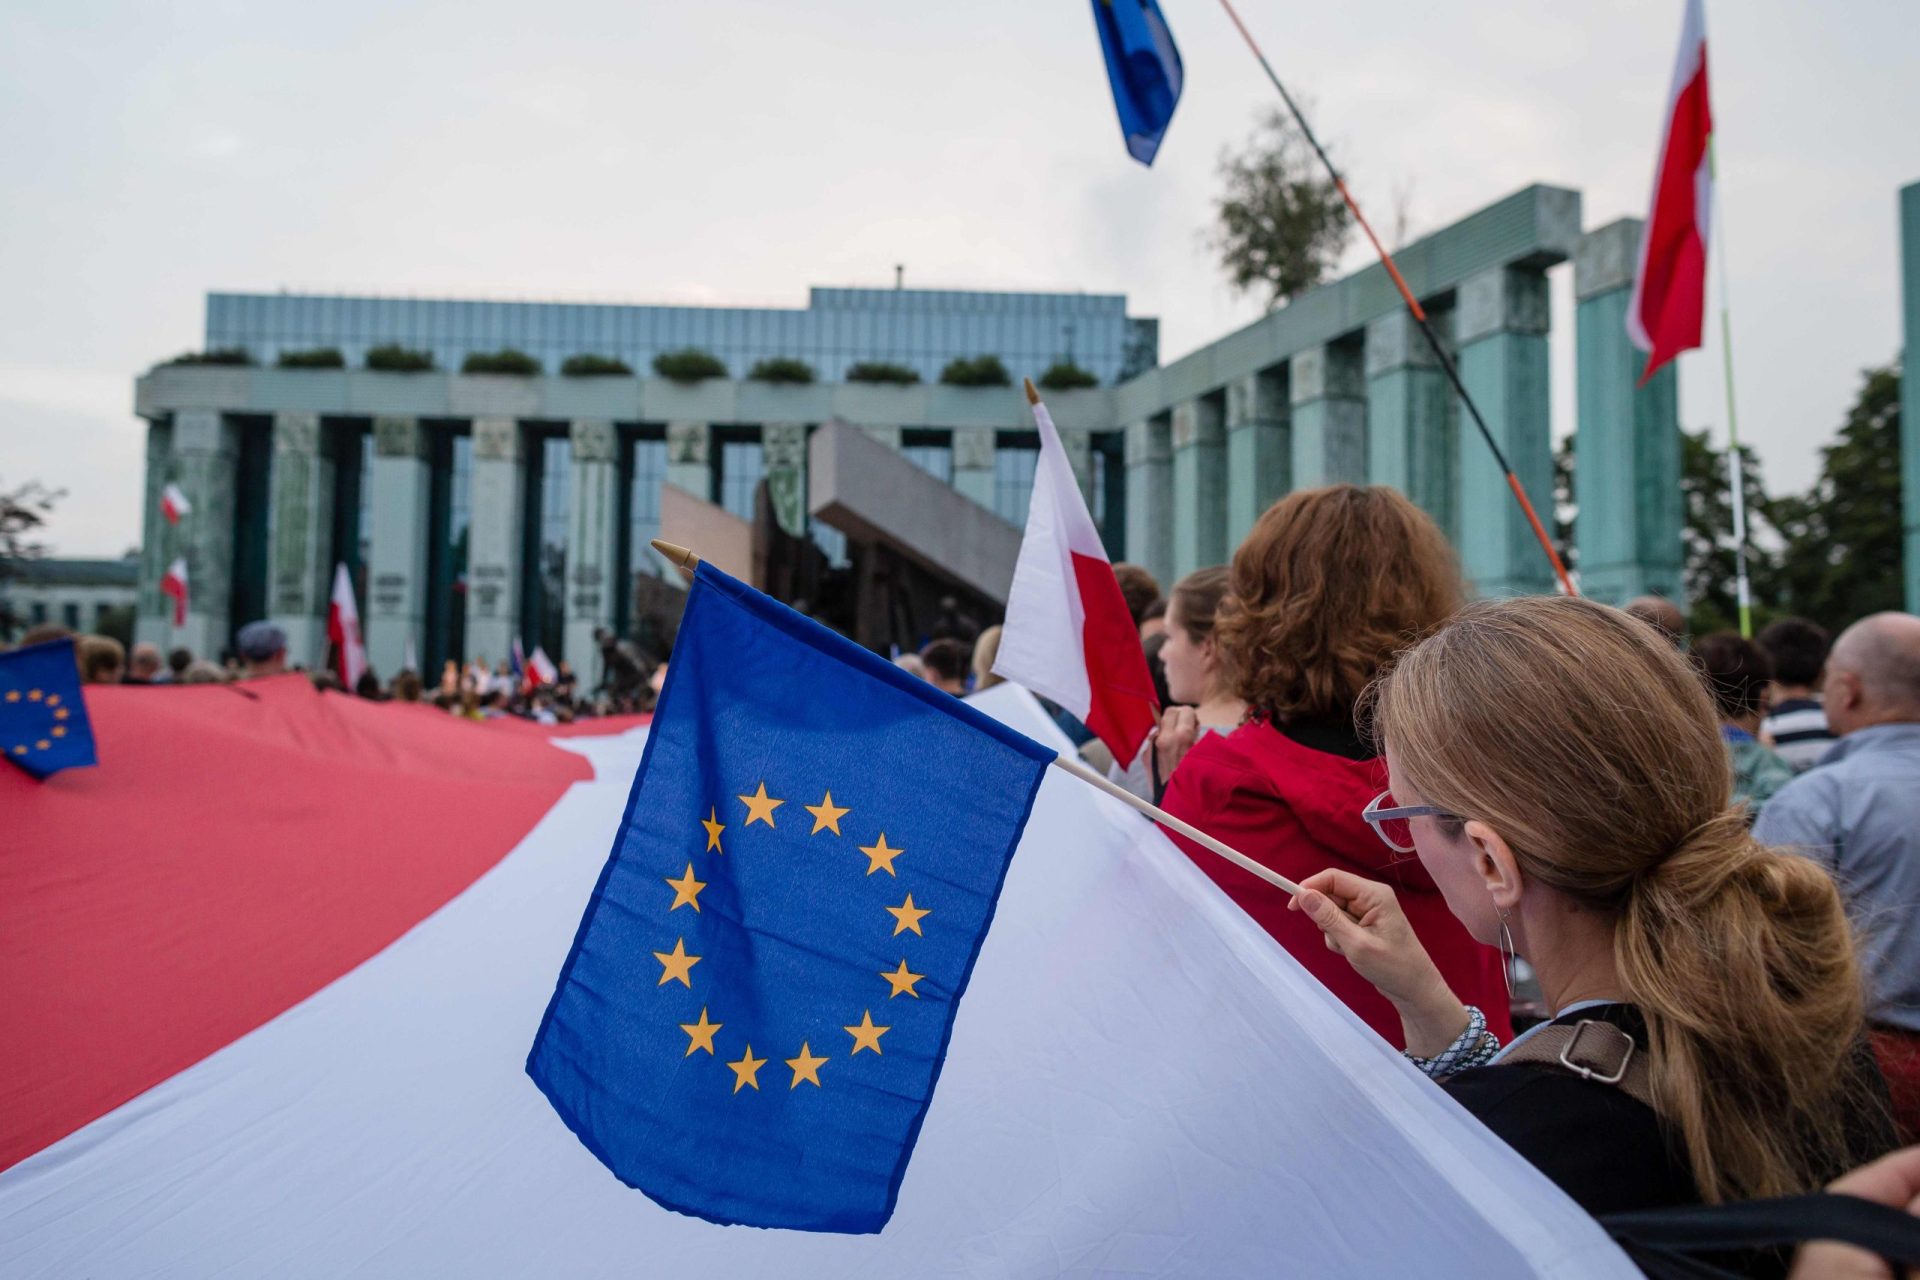 Polónia. Quanto vale uma democracia europeia?